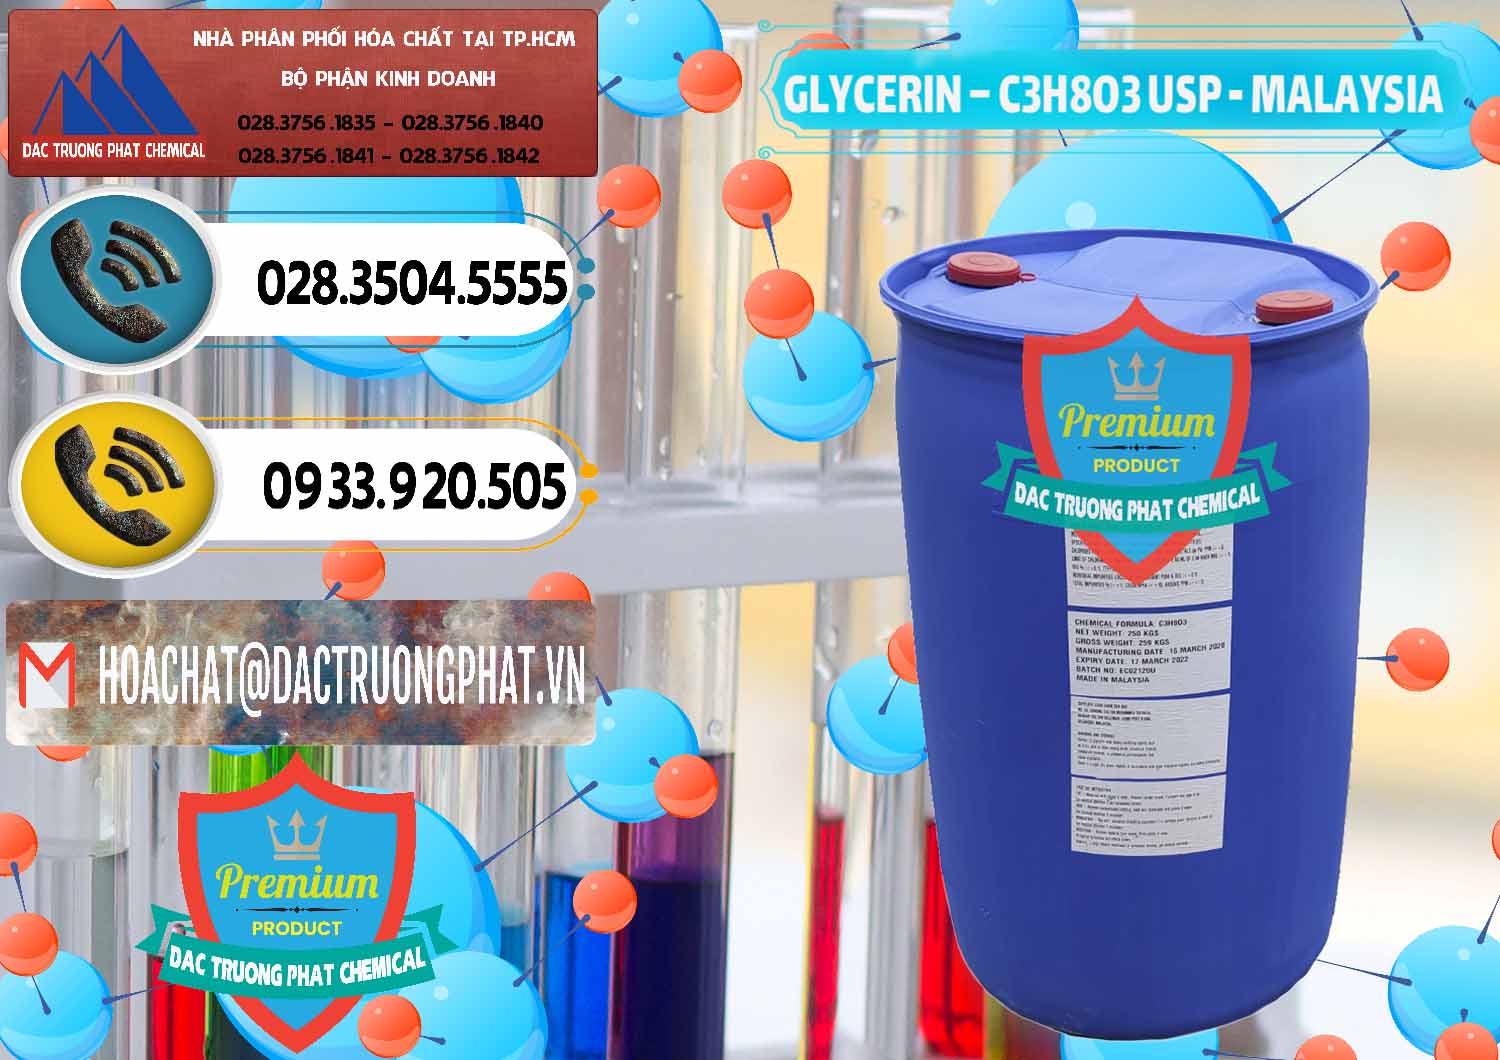 Công ty chuyên phân phối & bán Glycerin – C3H8O3 USP Malaysia - 0233 - Công ty cung cấp _ bán hóa chất tại TP.HCM - hoachatdetnhuom.vn